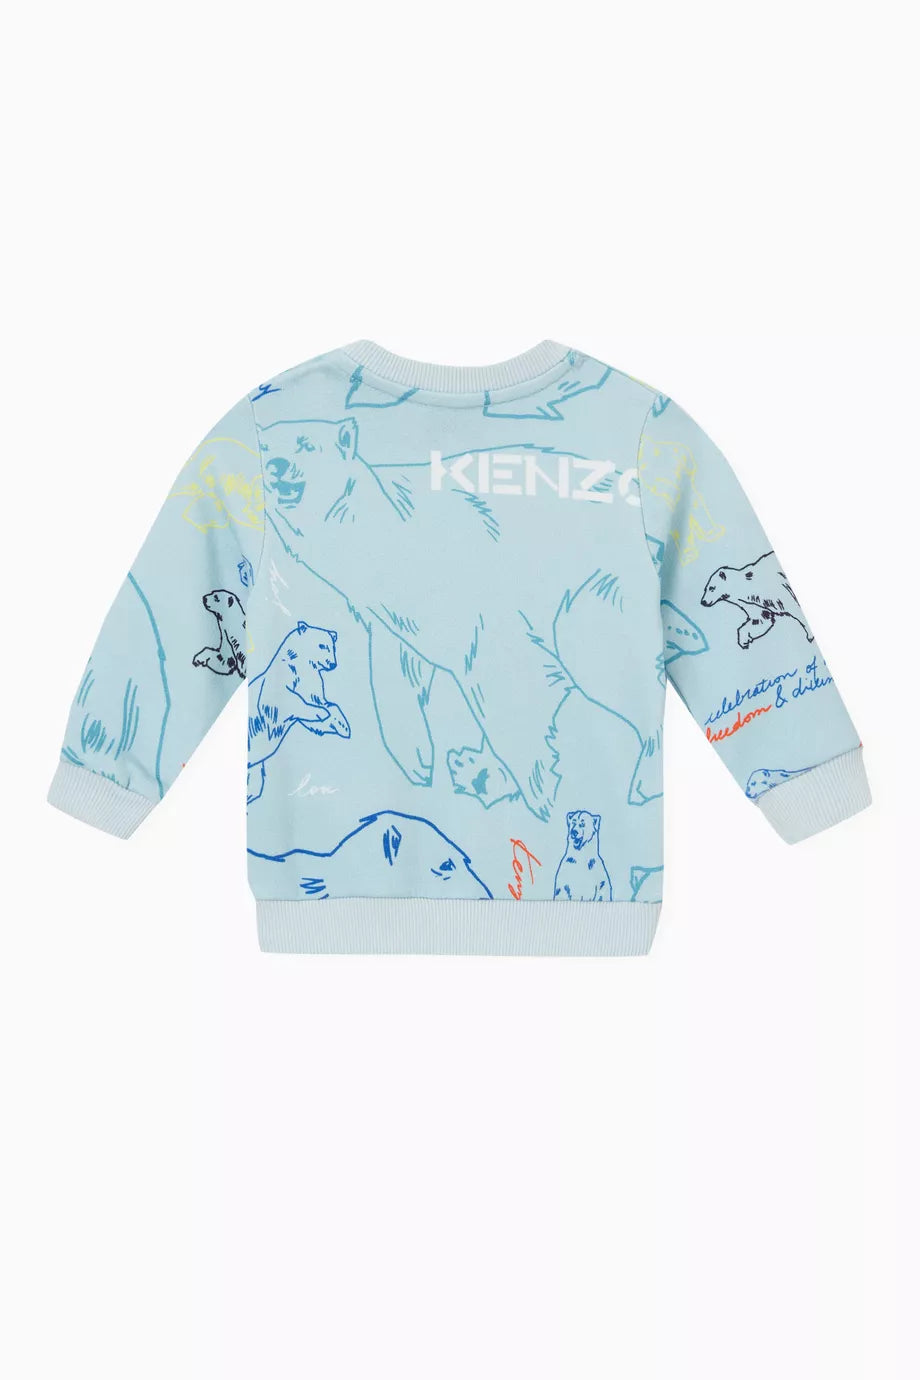 Kenzo Sweatshirt Style: K05433